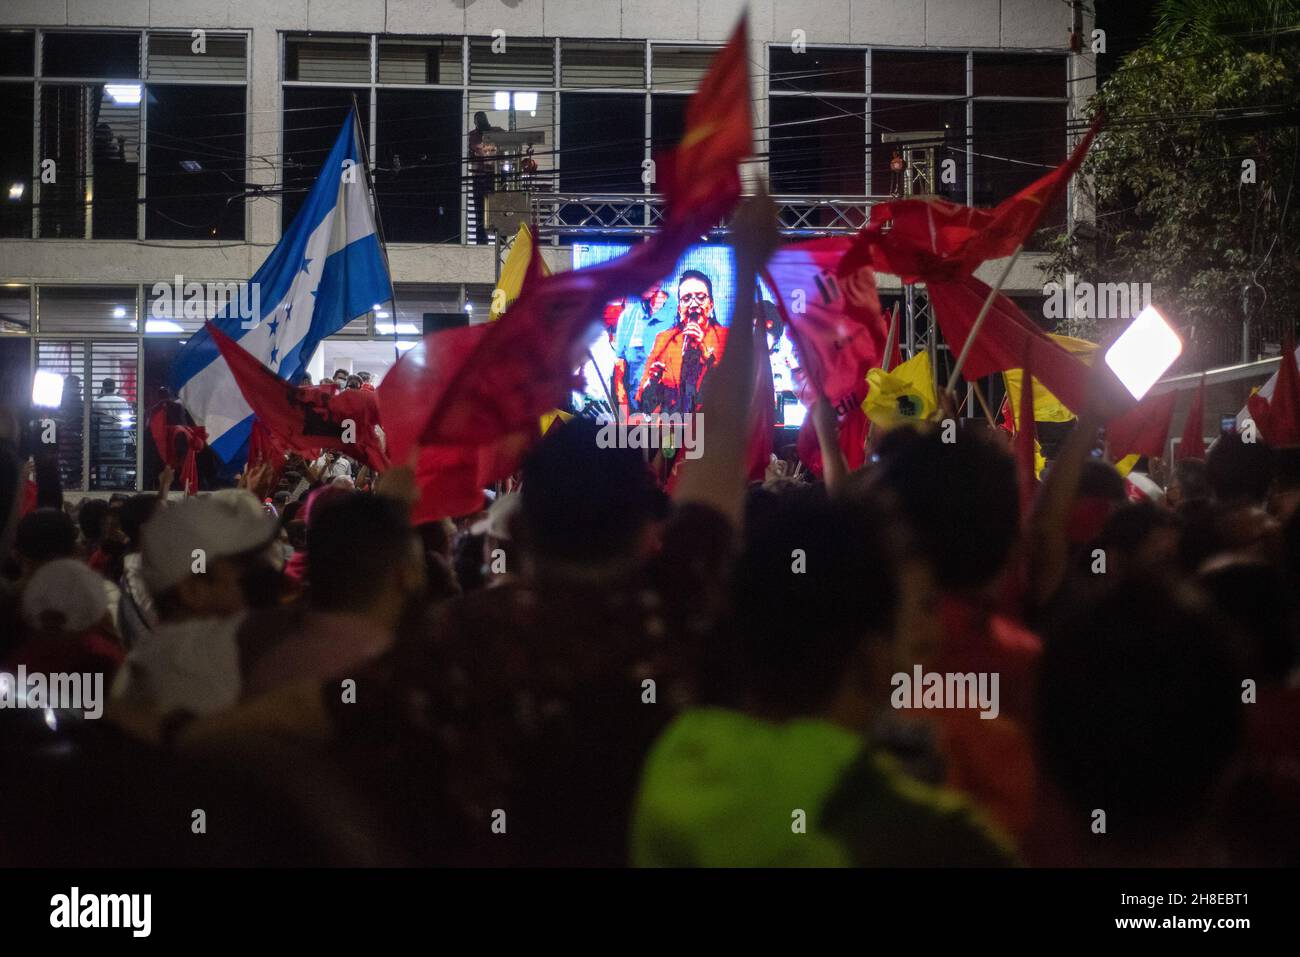 Les partisans brandient les drapeaux tout en regardant Xiomara Castro prononcer un discours après les résultats préliminaires lors de l'élection présidentielle.Le 28 novembre, le Honduras a tenu ses élections présidentielles, après 12 ans de parti national qui contrôle l'opposition, le Parti libre et Xiomara Castro ont une chance de reprendre le pouvoir.Castro a prononcé un discours après que les premiers résultats des votes l'ont montré à la tête de 20 pour cent.Les partisans du Parti libre l'ont célébré toute la nuit comme une victoire, bien qu'aucune décision sur le vainqueur n'ait encore été officielle. Banque D'Images